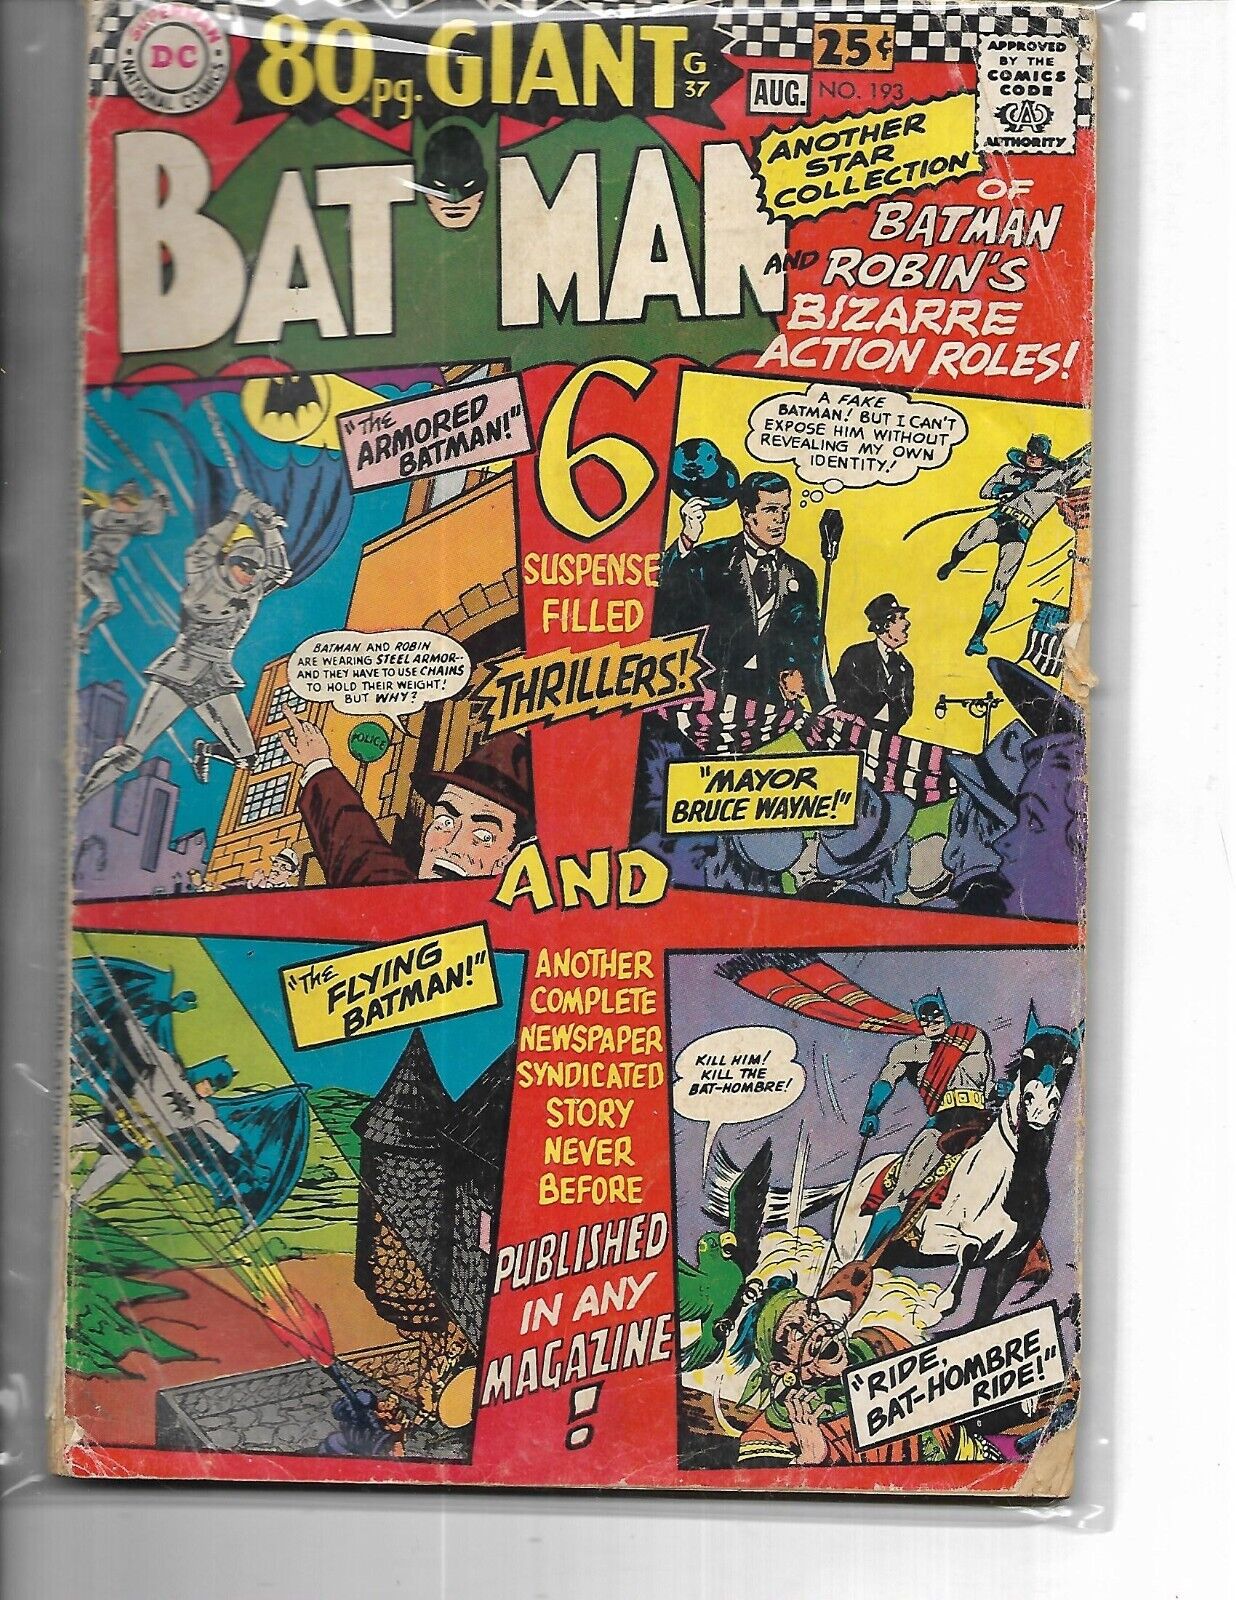 BATMAN # 193 -  80 Page Giant - GOOD MINUS COND.